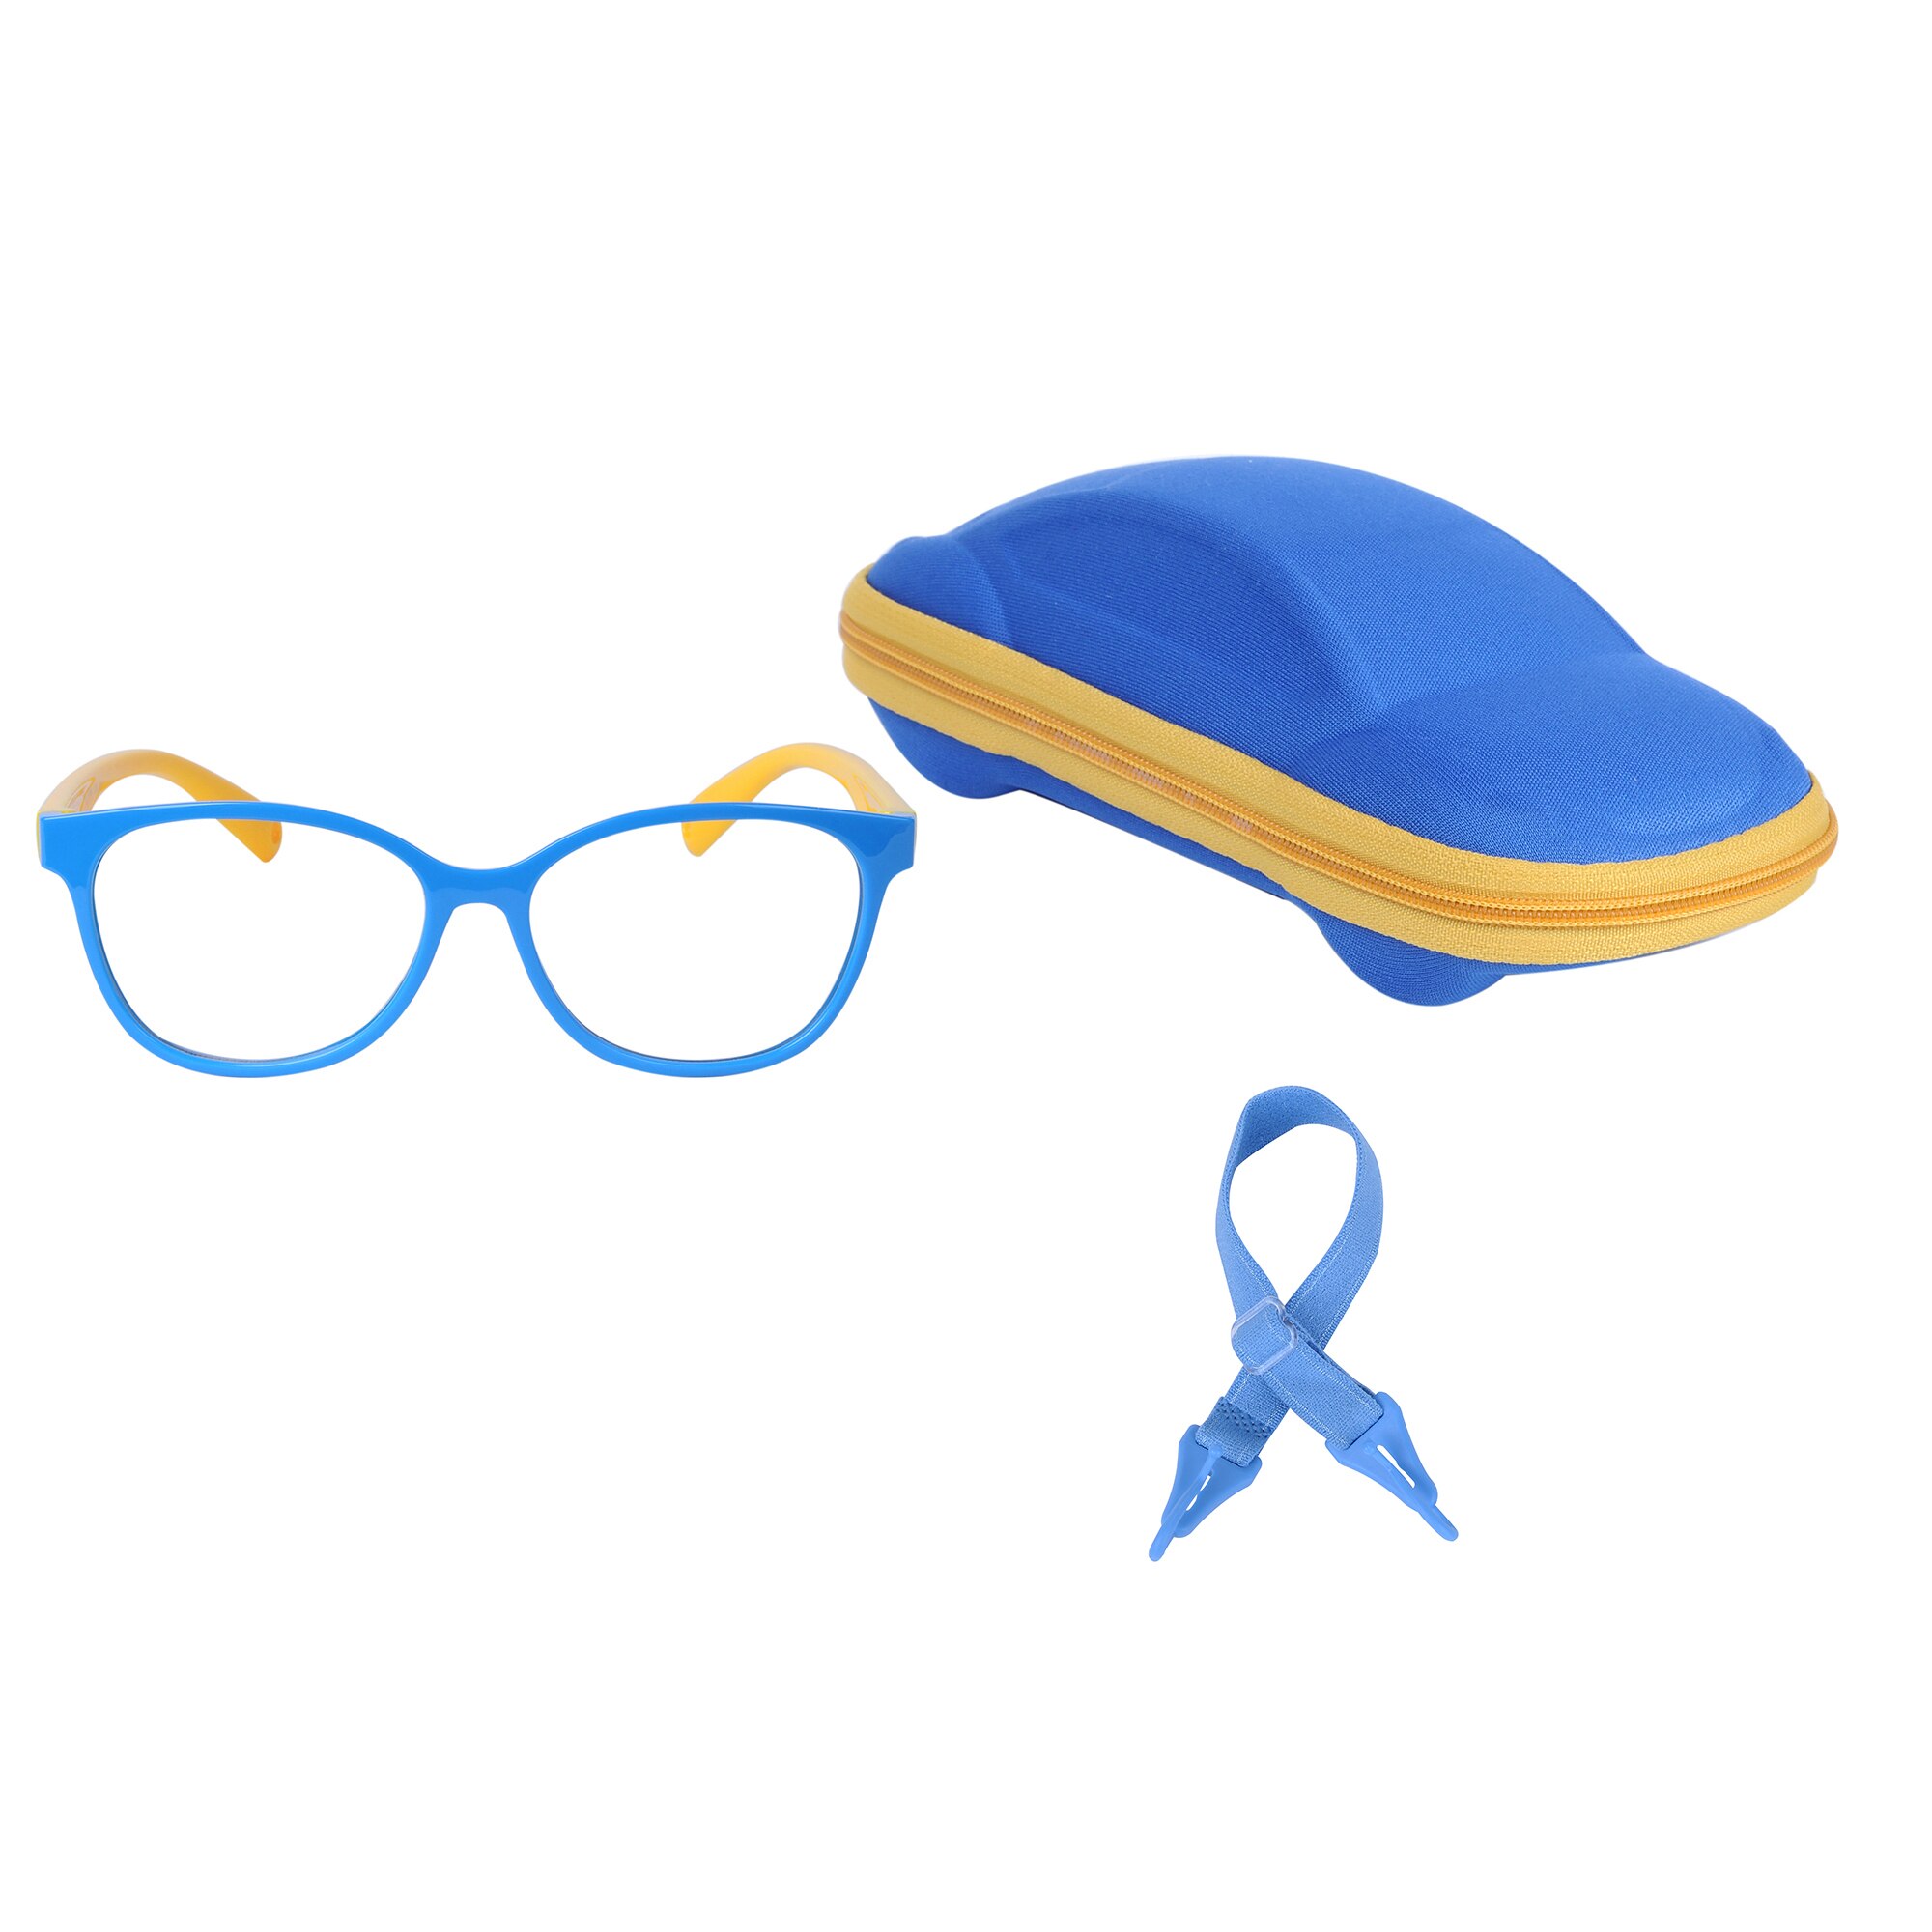 Børne blåt lys blokerende briller til drengepiger med justerbar rem + etui + renseklud